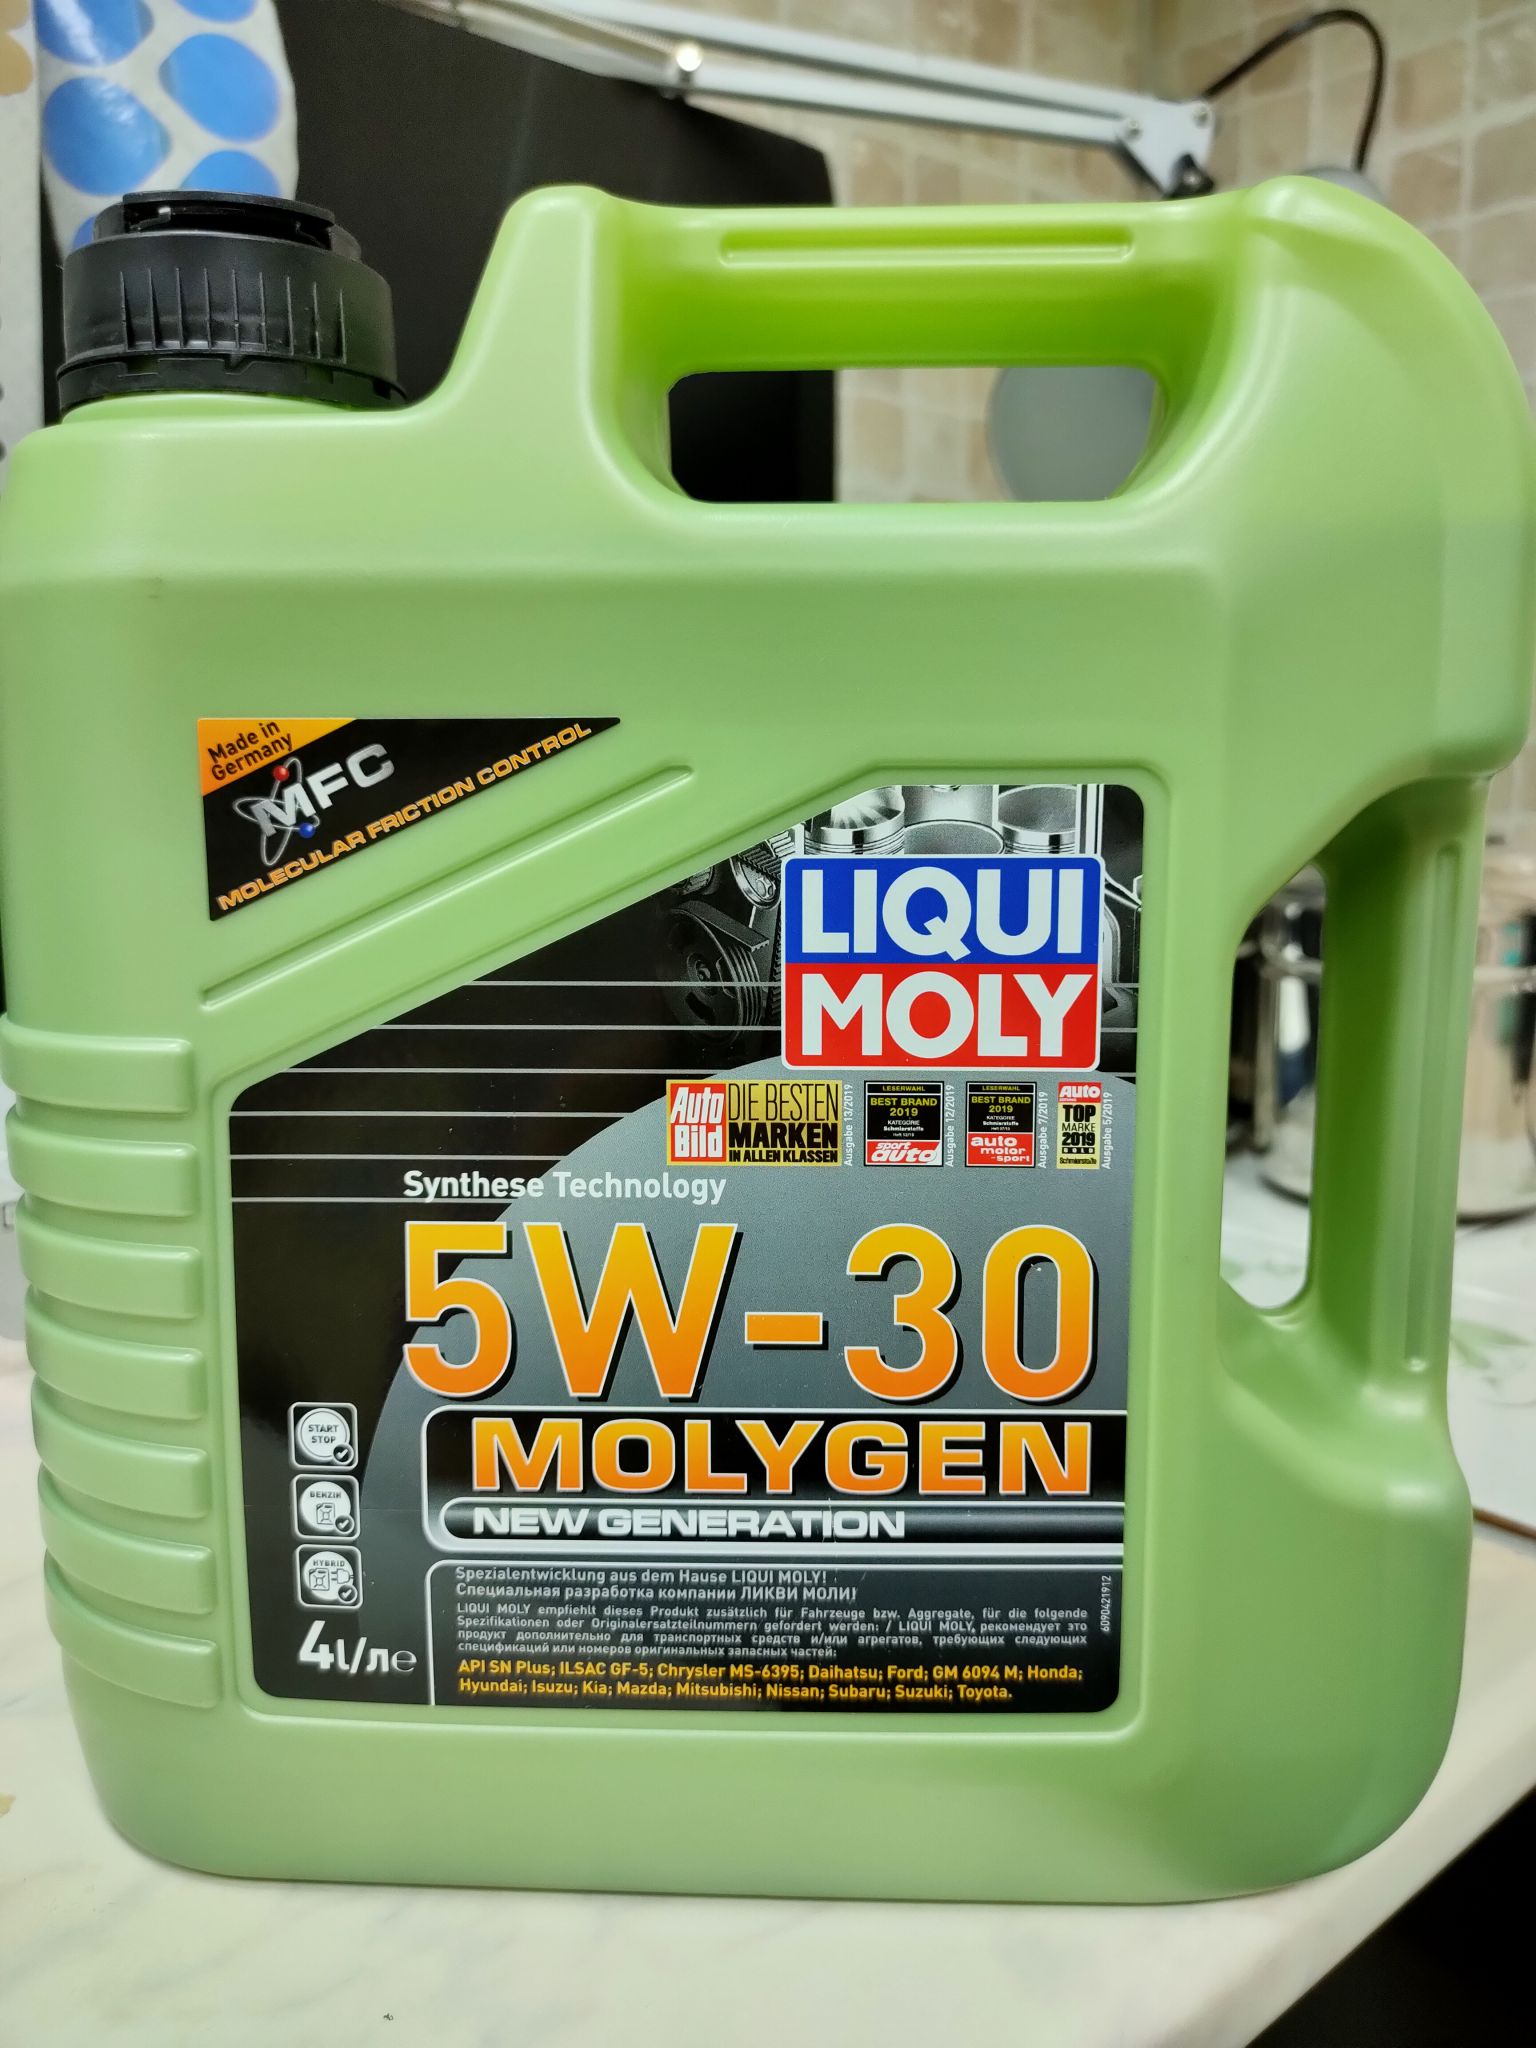 Купить масло ликви моли молиген. Ликви-Молли молиген 5w-30. Ликви моли молиген 5 в 30. Моторное масло Liqui Moly Molygen New Generation 5w-30 4 л. Масло Liqui Moly 5w30 Molygen New Generation.